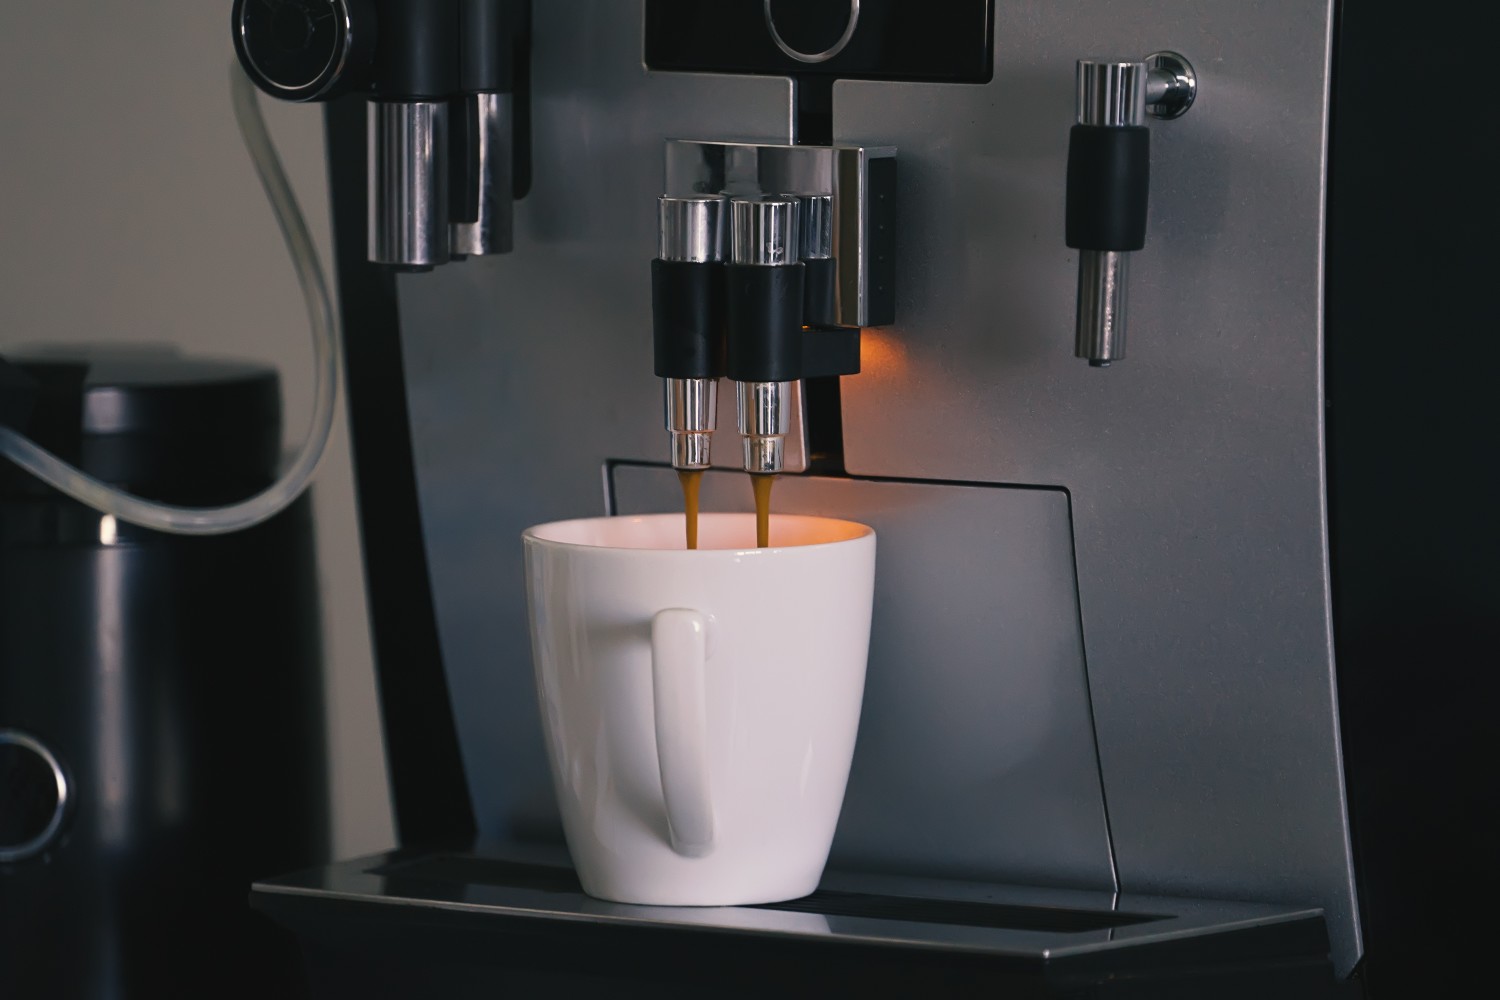 machine à café à grain